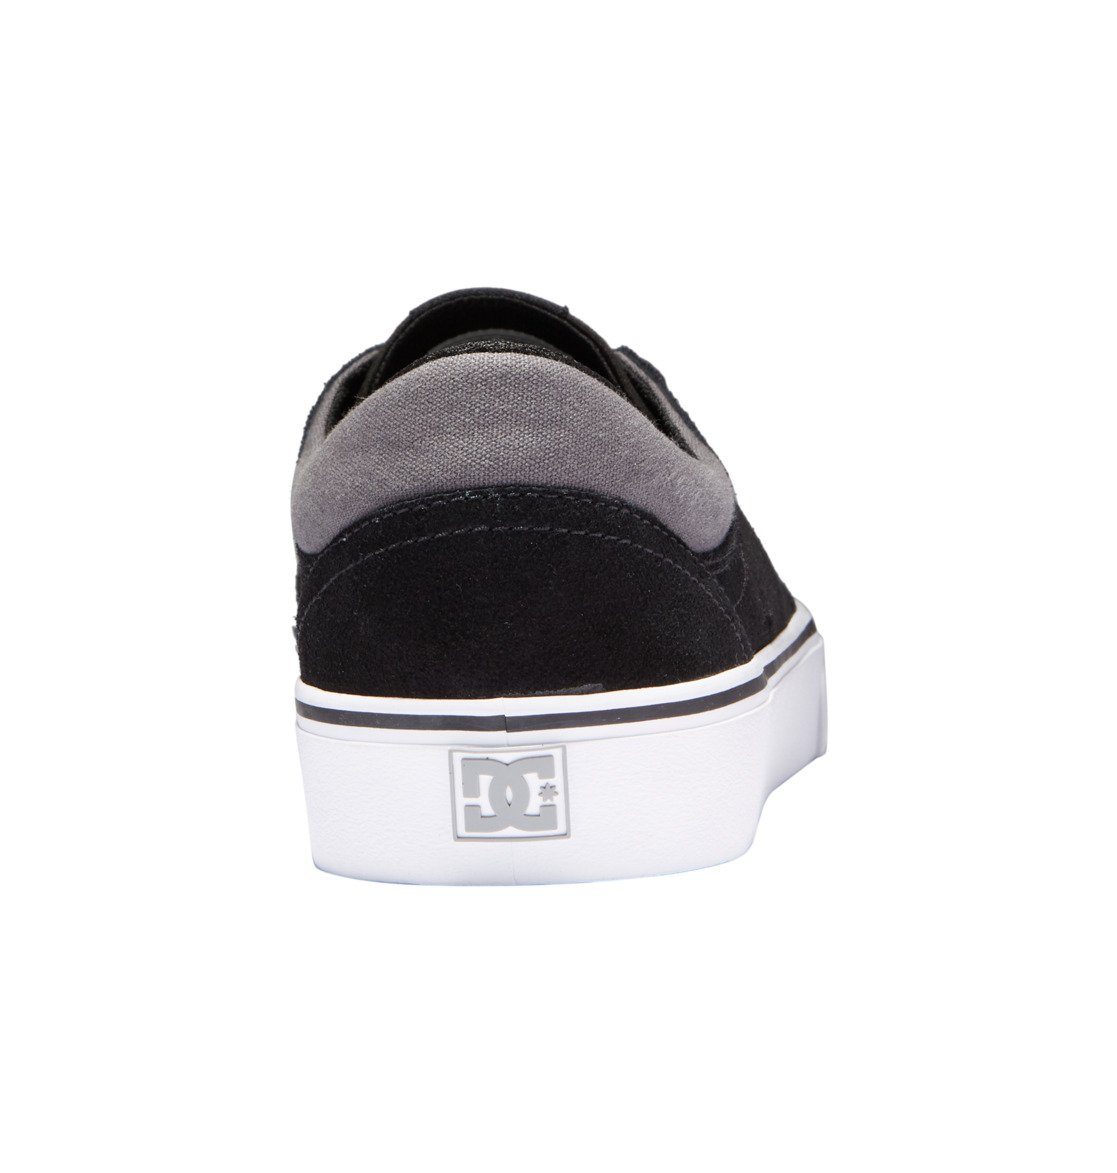 DC Shoes Trase Black/Black/Grey Sneaker